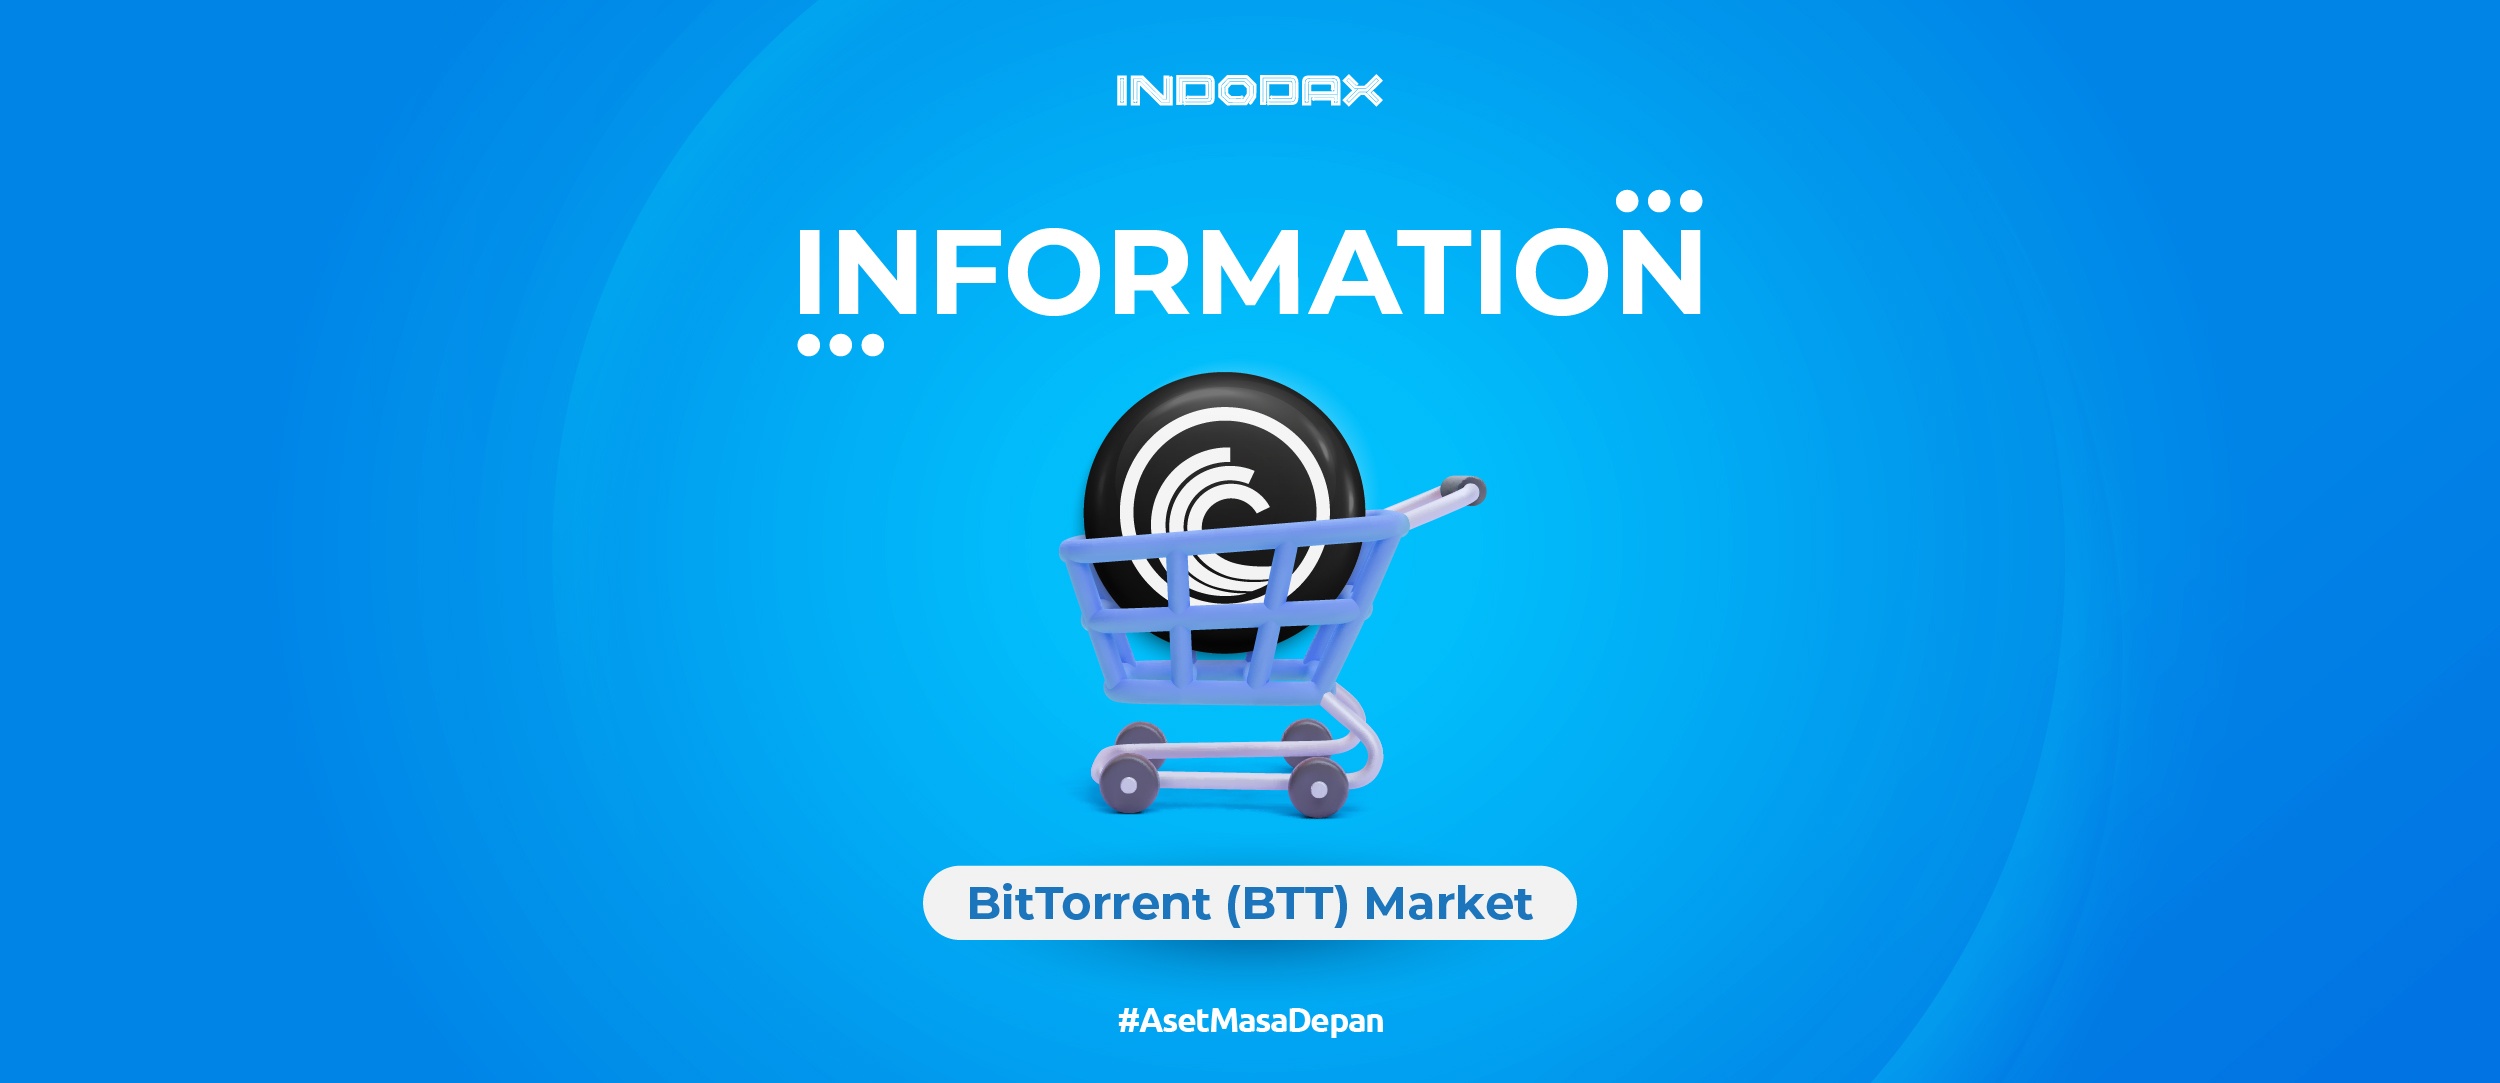 Indodax Information: BitTorrent Market